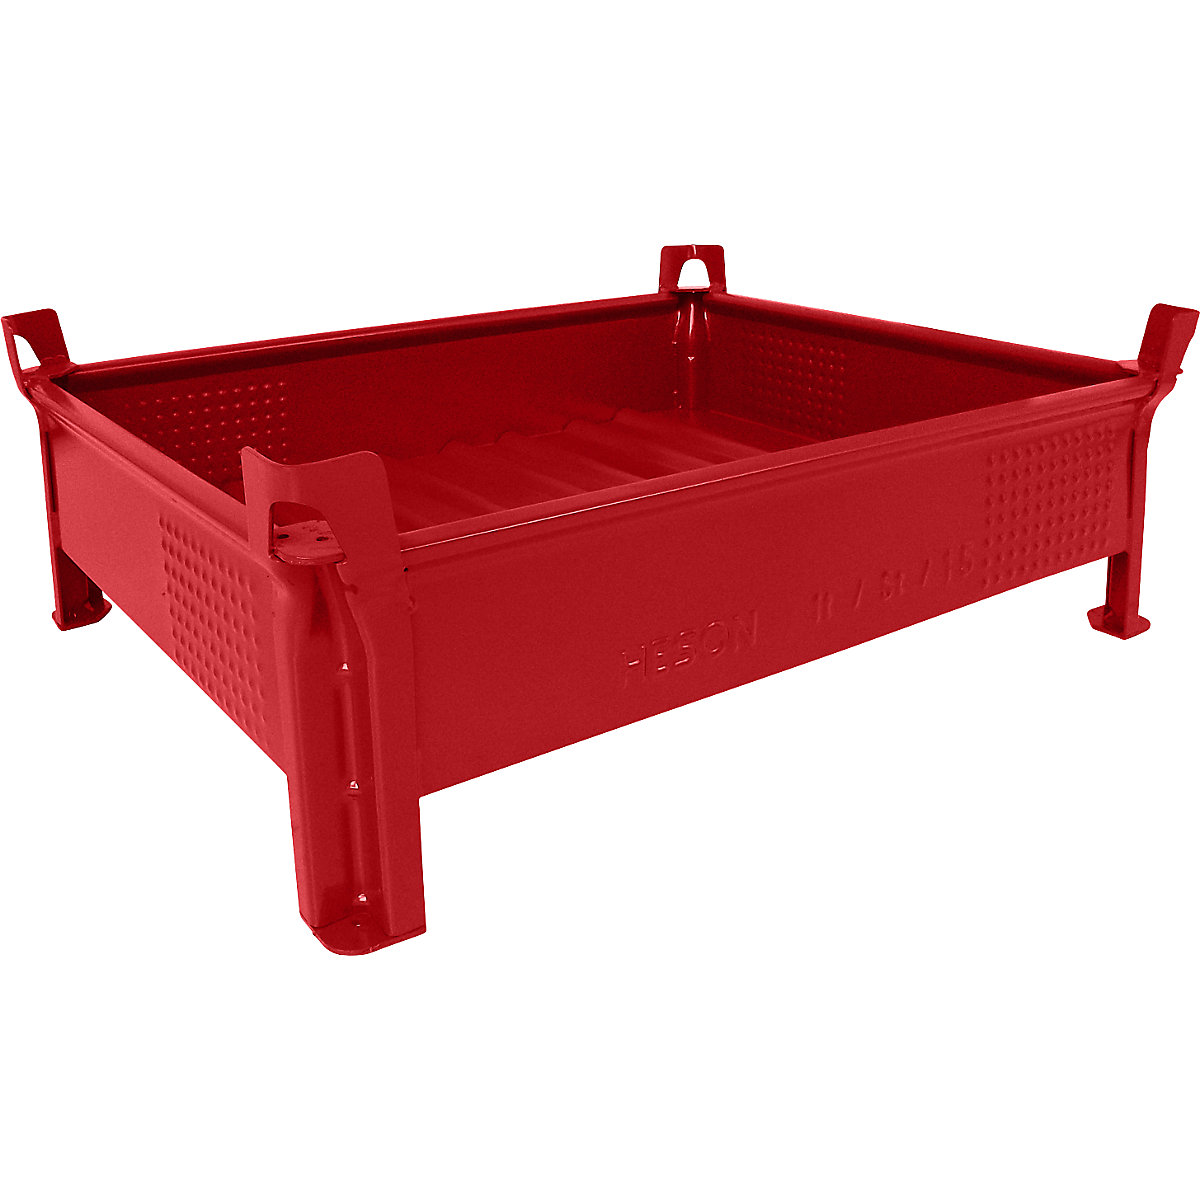 Container stivuibil din tablă de oțel, construcție joasă, pereți plini – Heson, lăț. x lung. 800 x 1000 mm, capacitate portantă 500 kg, roșu, minimum 10 buc.-3